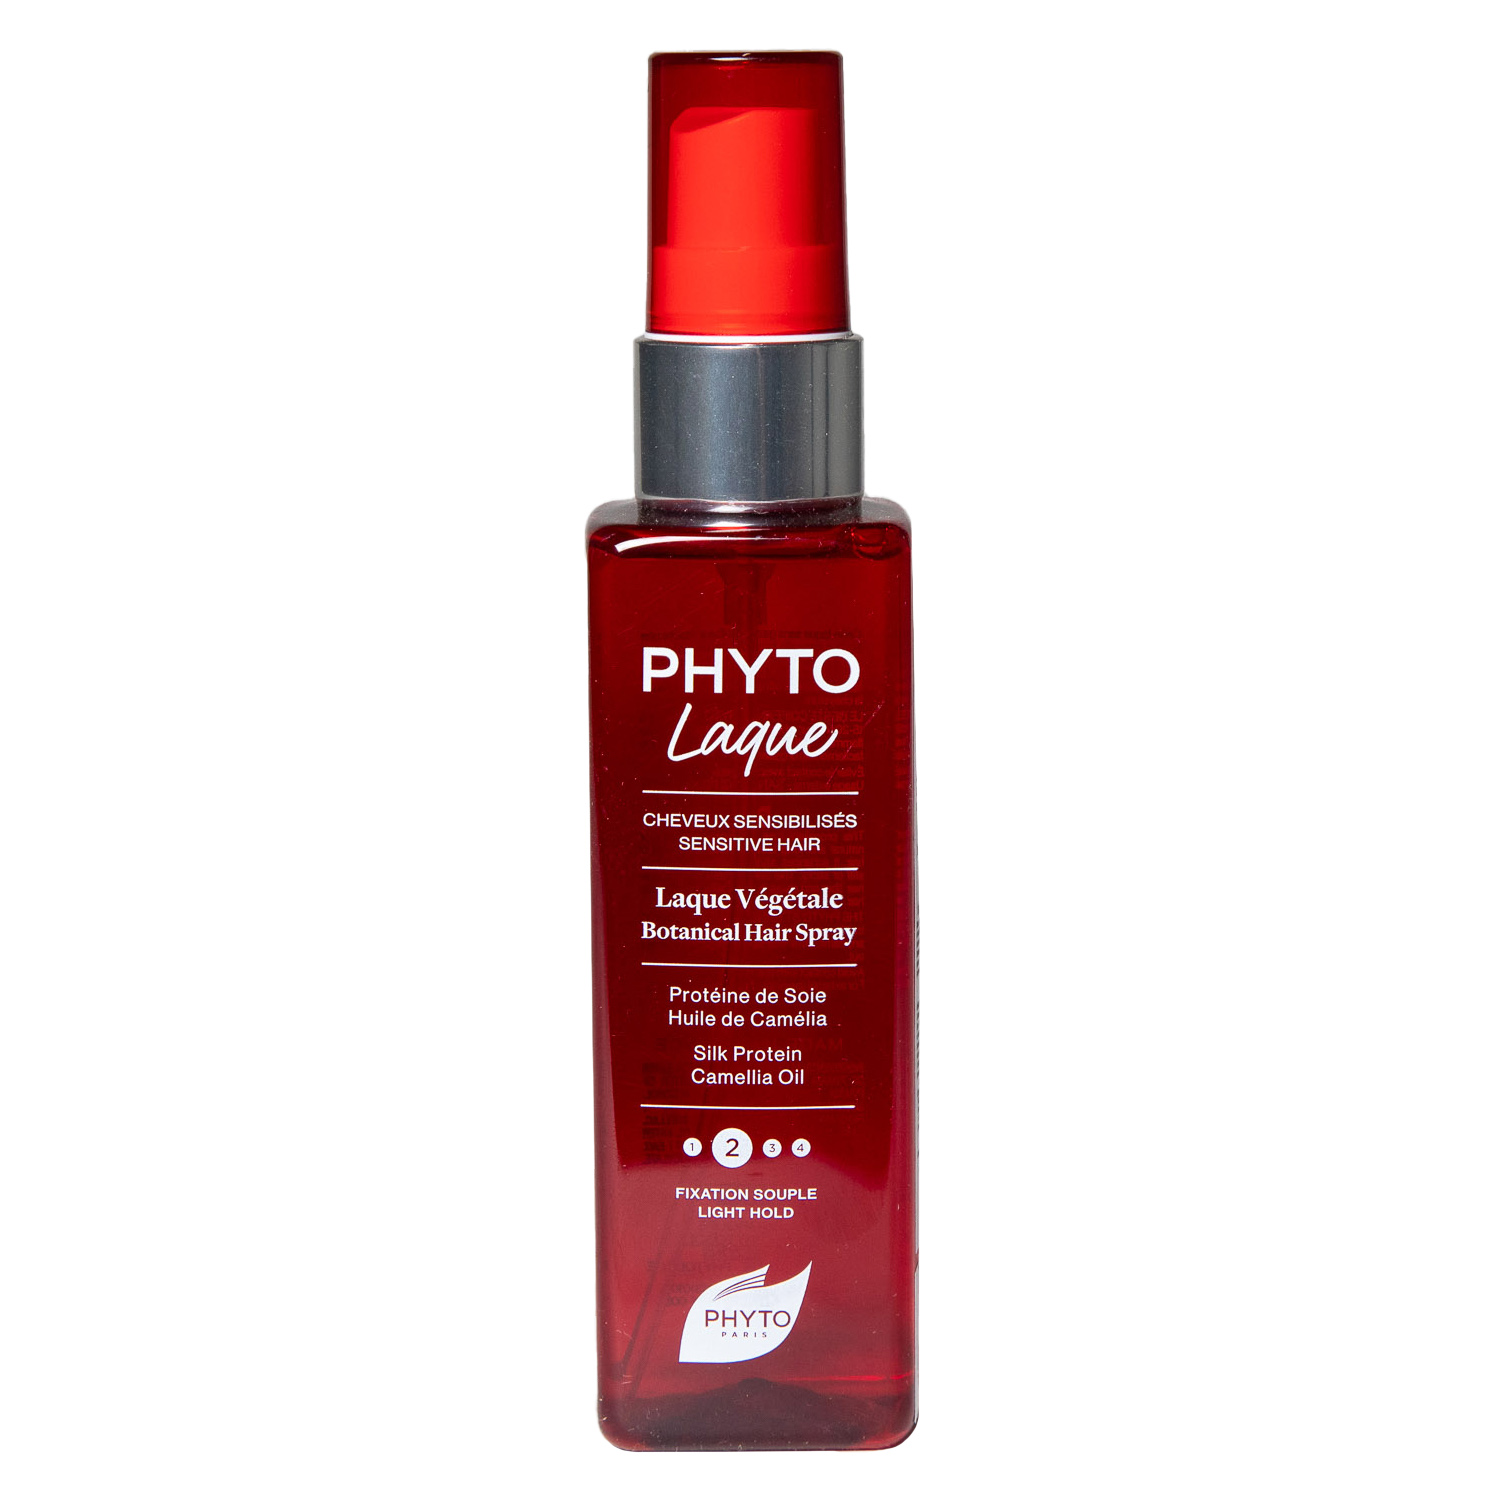 Phyto Растительный лак для волос с легкой фиксацией, 100 мл. фото